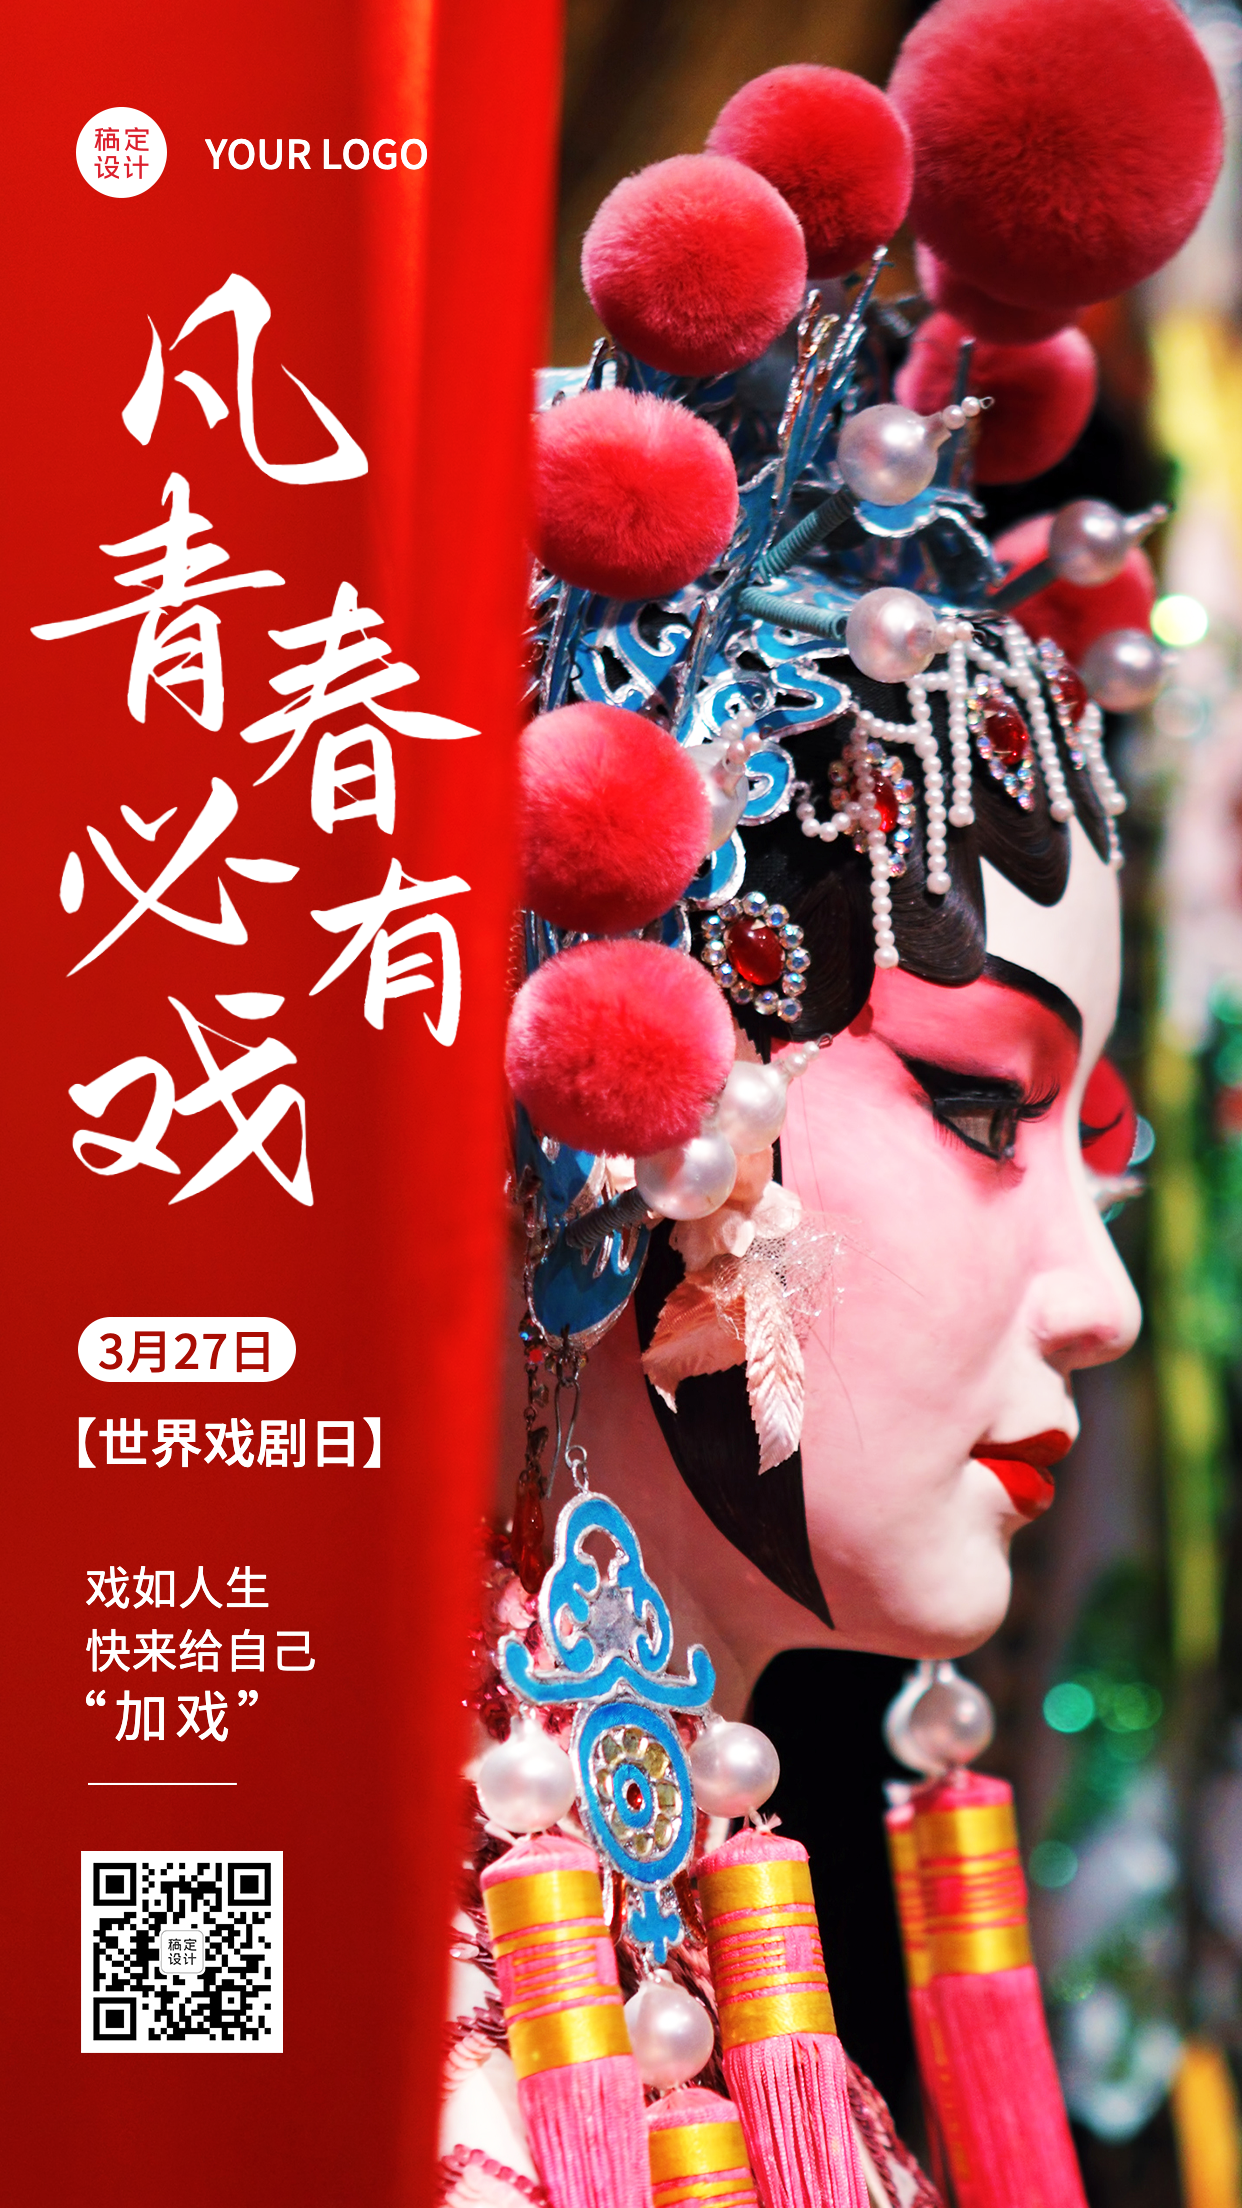 3.27世界戏剧日节日宣传中国风实景手机海报预览效果